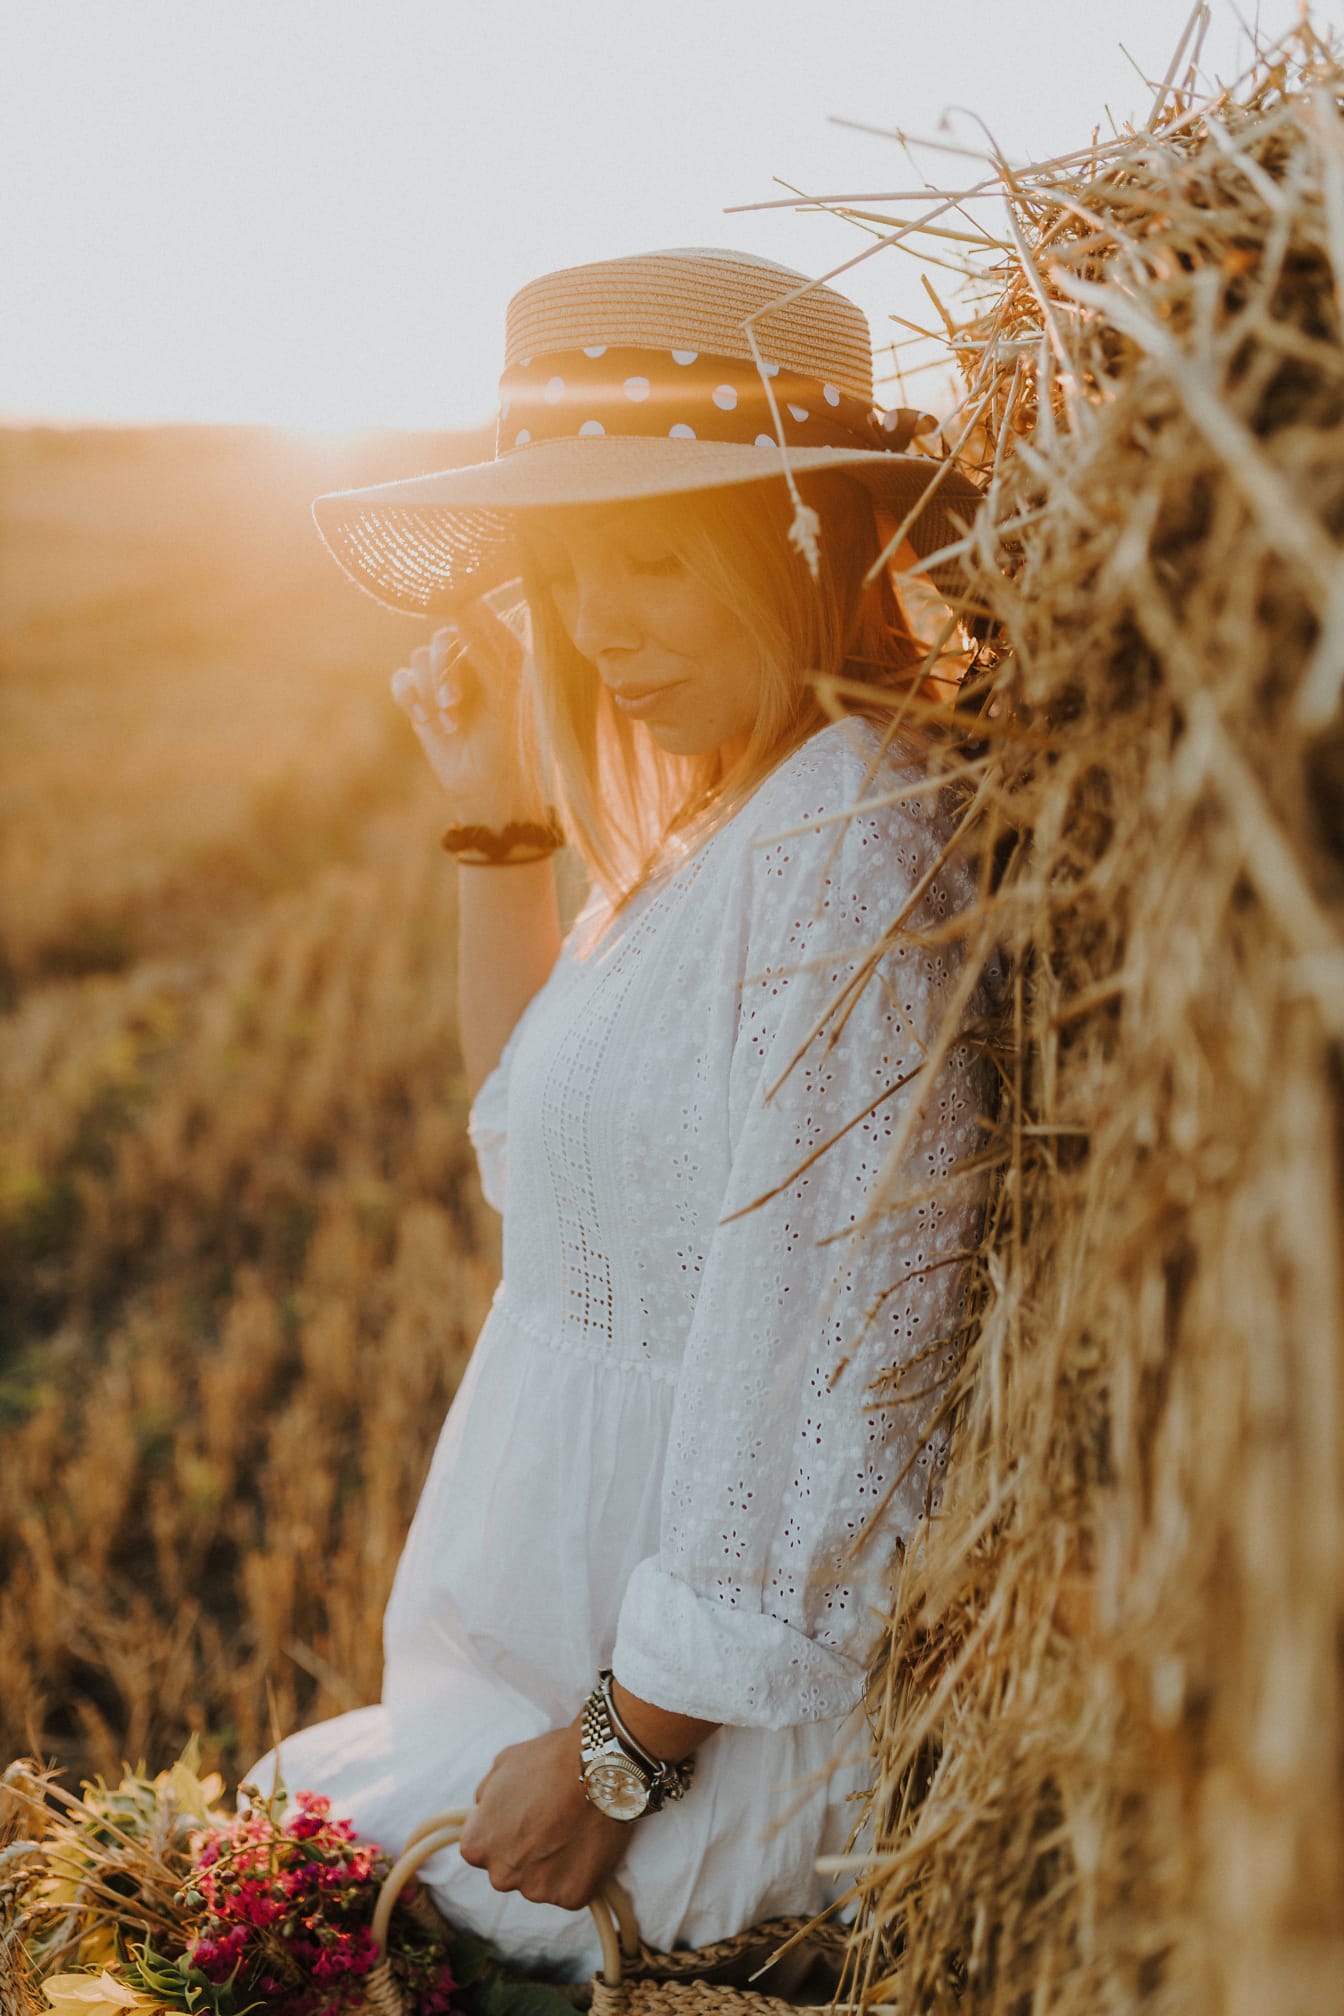 Hübsche junge Frau mit Hut am Heuhaufen im Weizenfeld